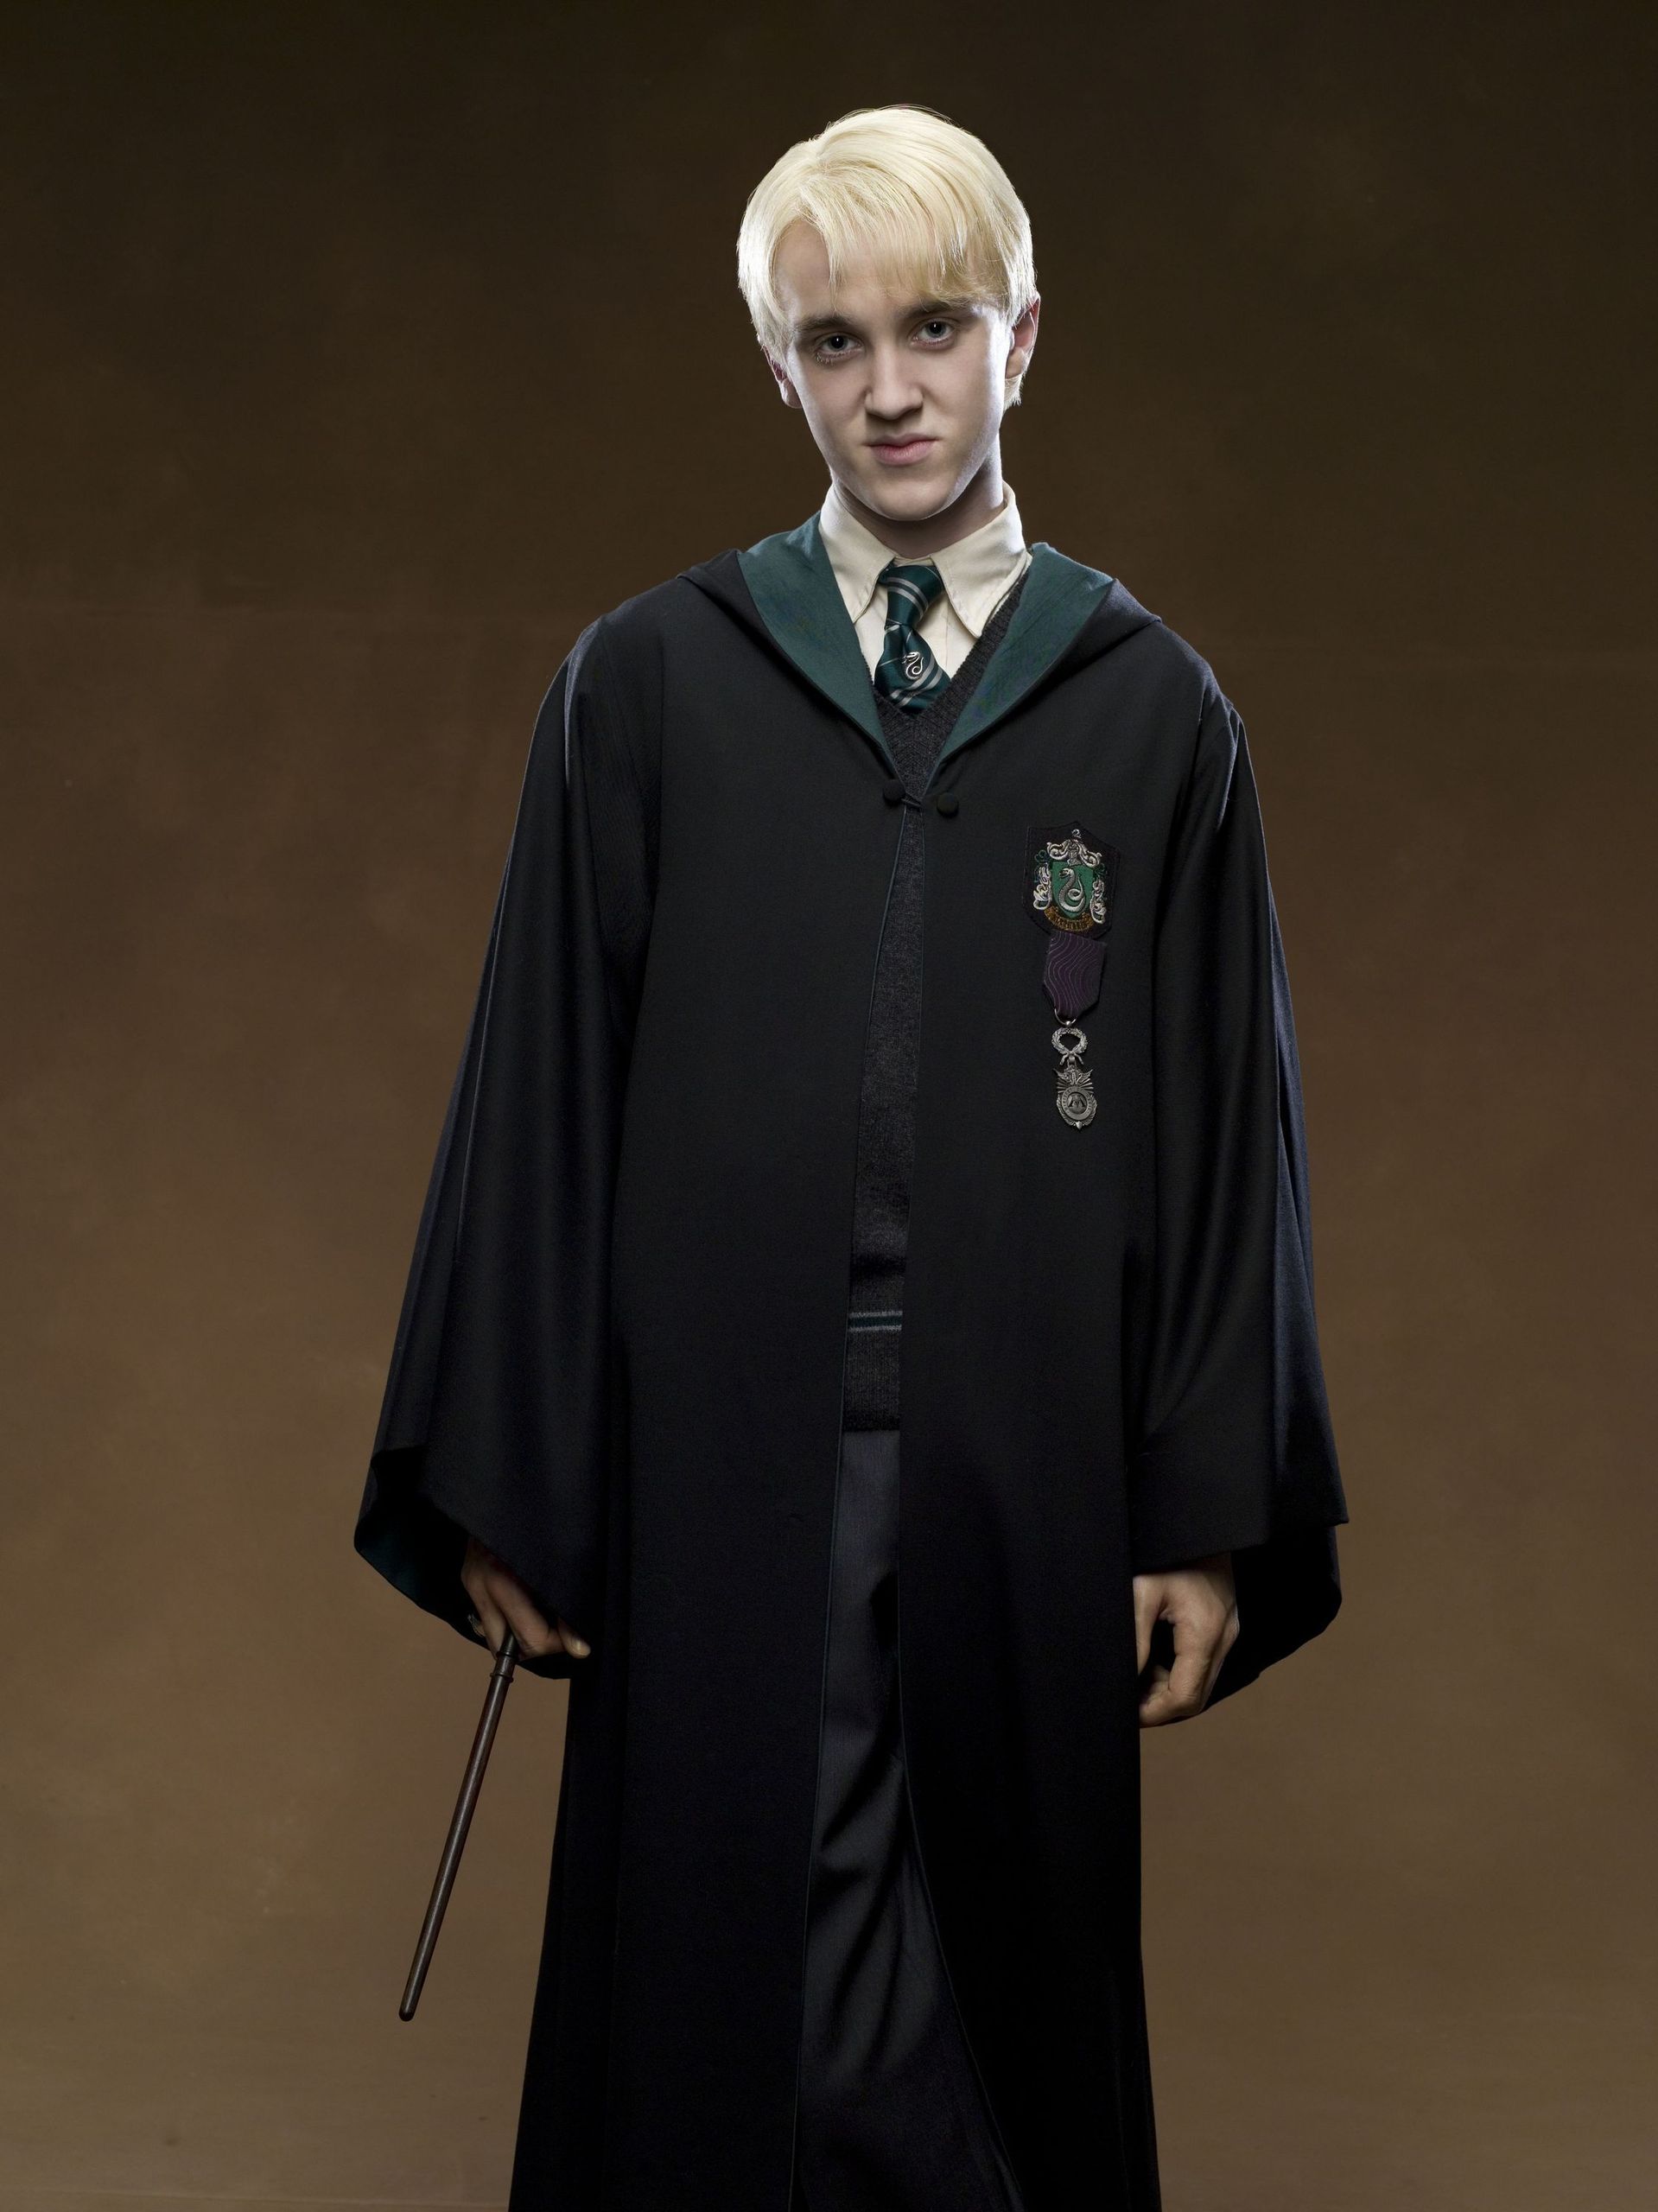 Draco - Harry Potter Photo (2255148) - Fanpop